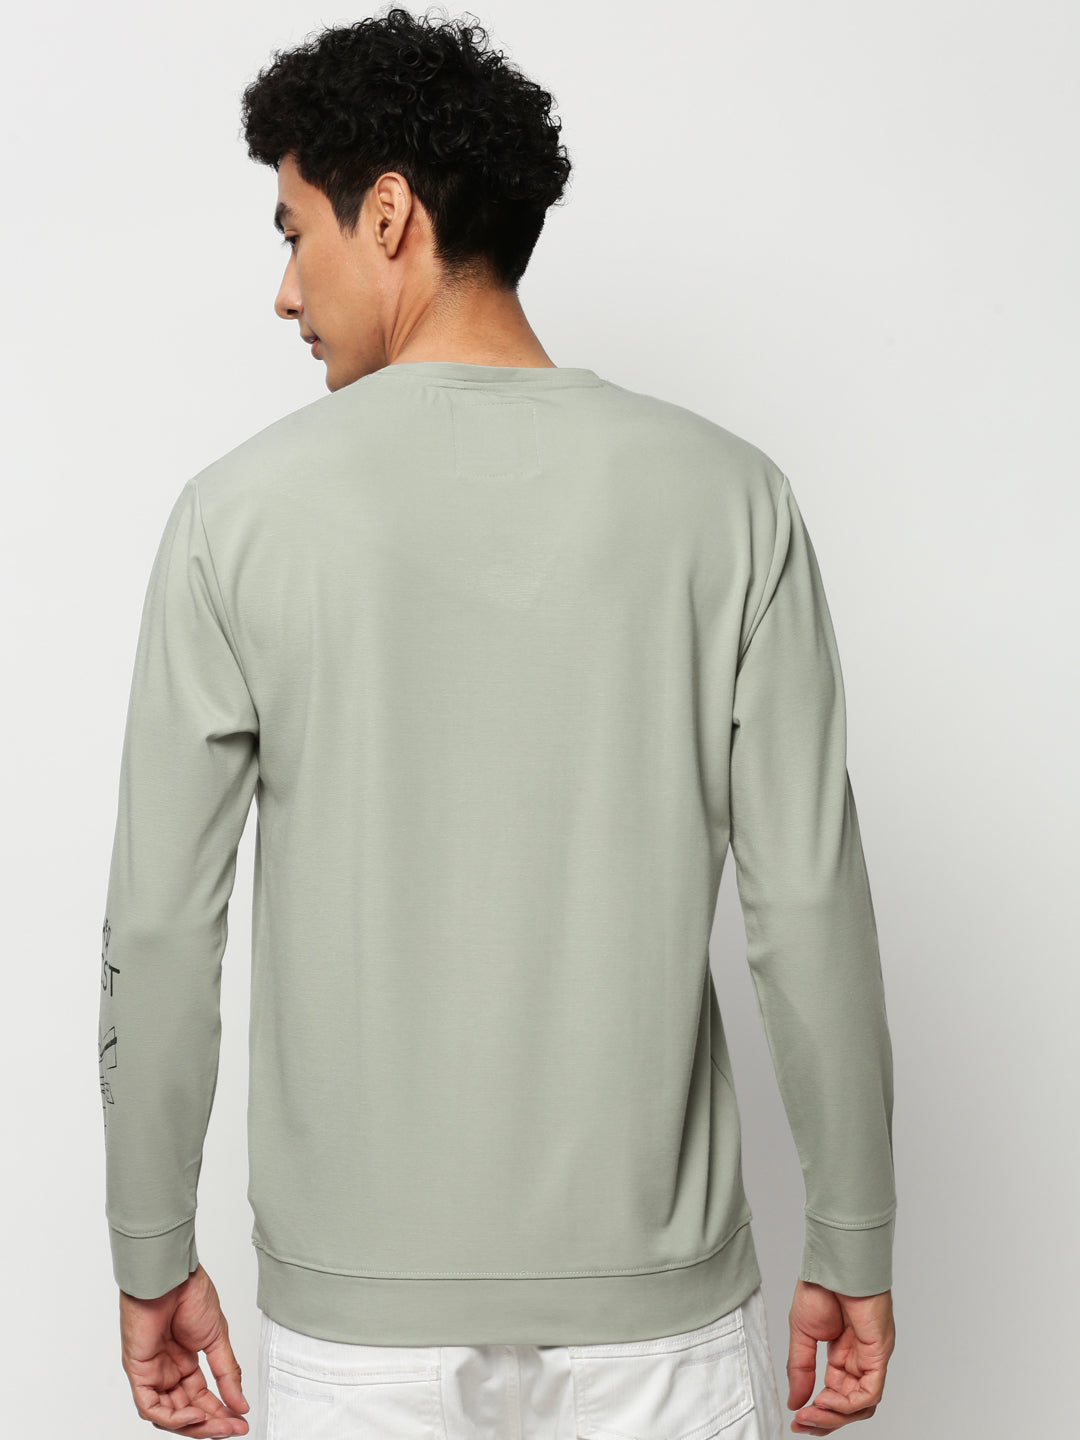 Men Green Typographic Casual Sweatshirts